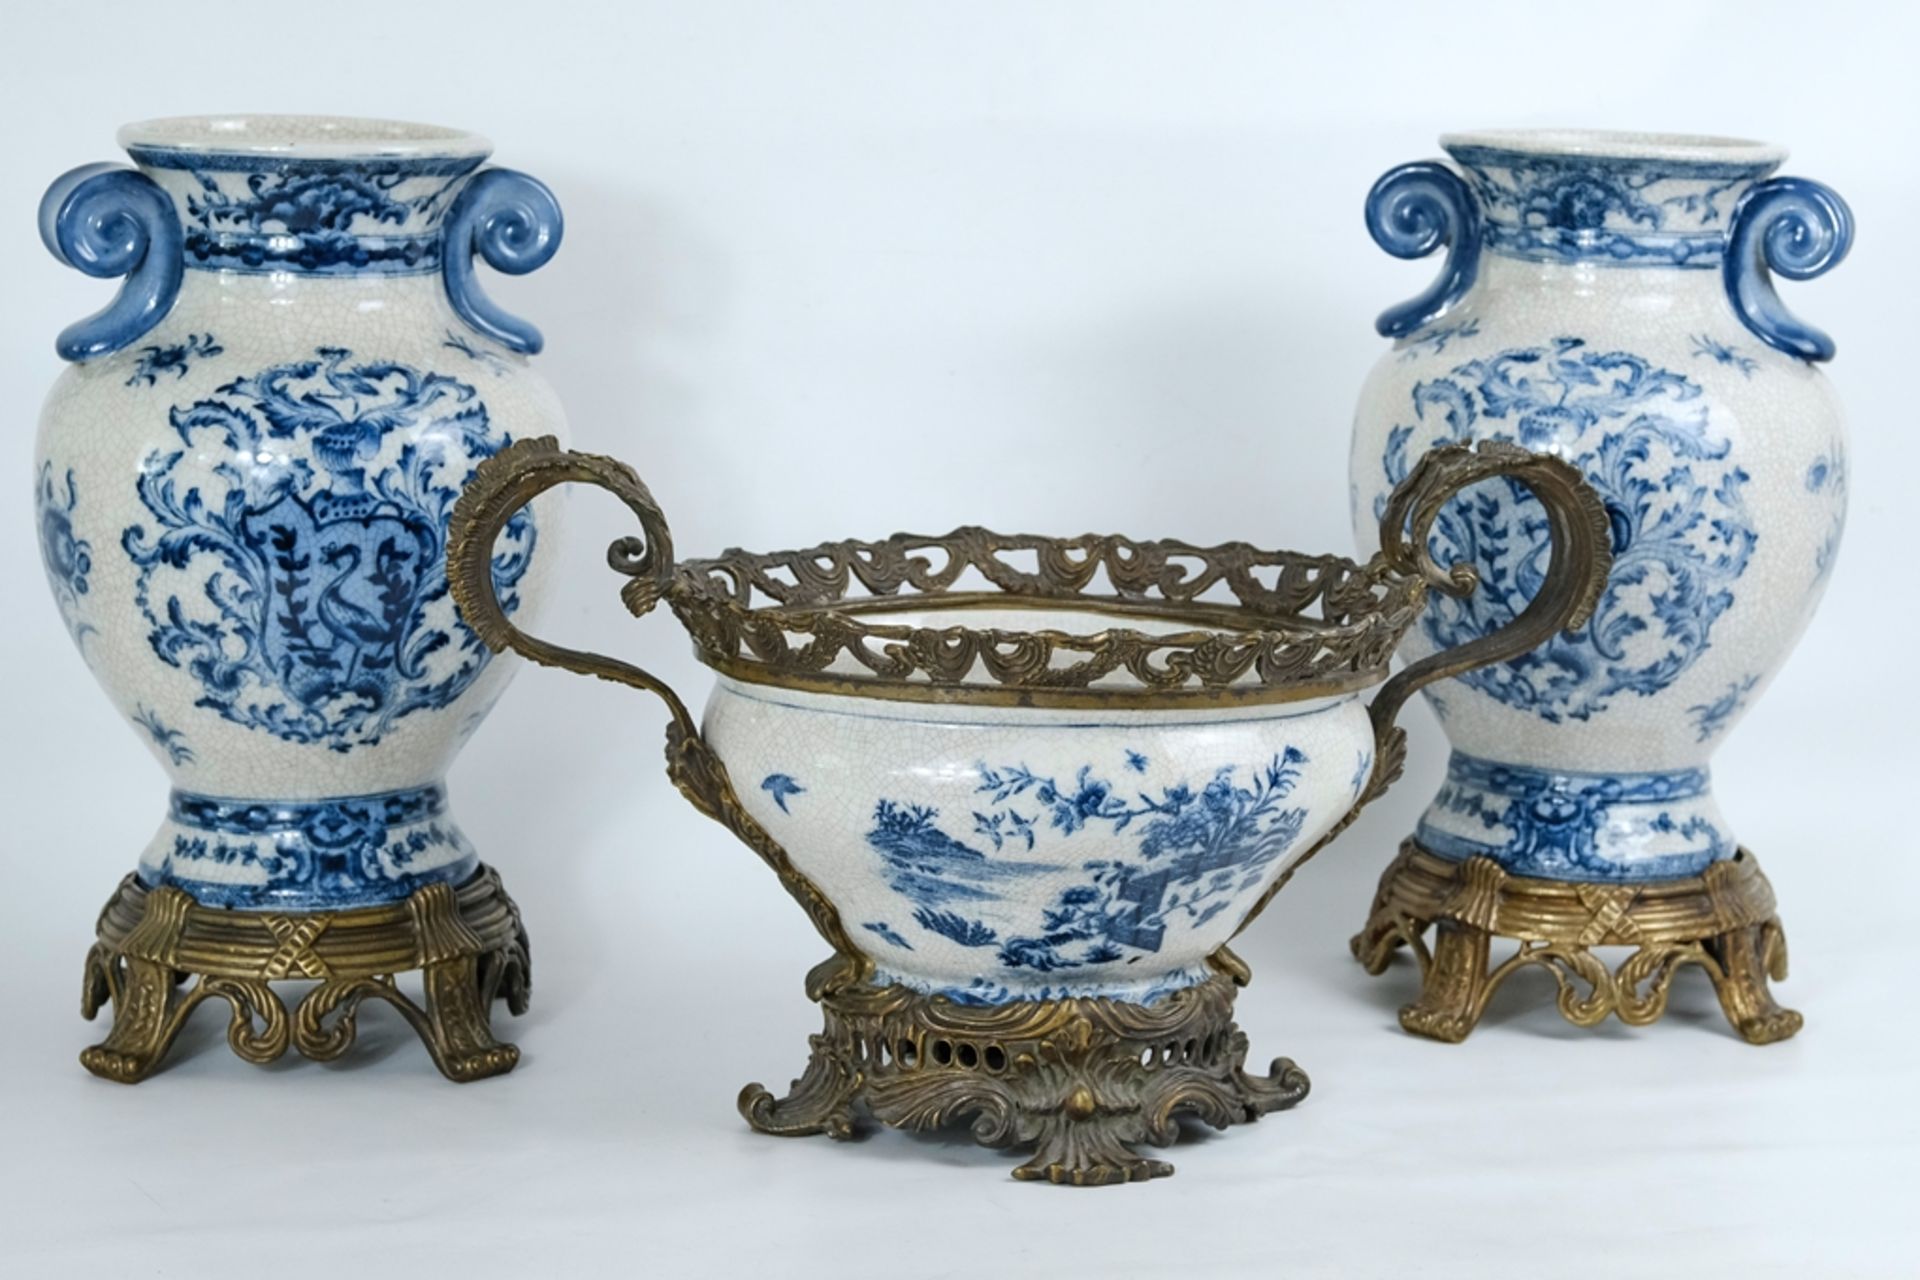 VASEN UND JARDINIÈRE aus Keramik, blaue Unterglasurbemalung, Voluten-Dekor, Messingbeschläge, reich